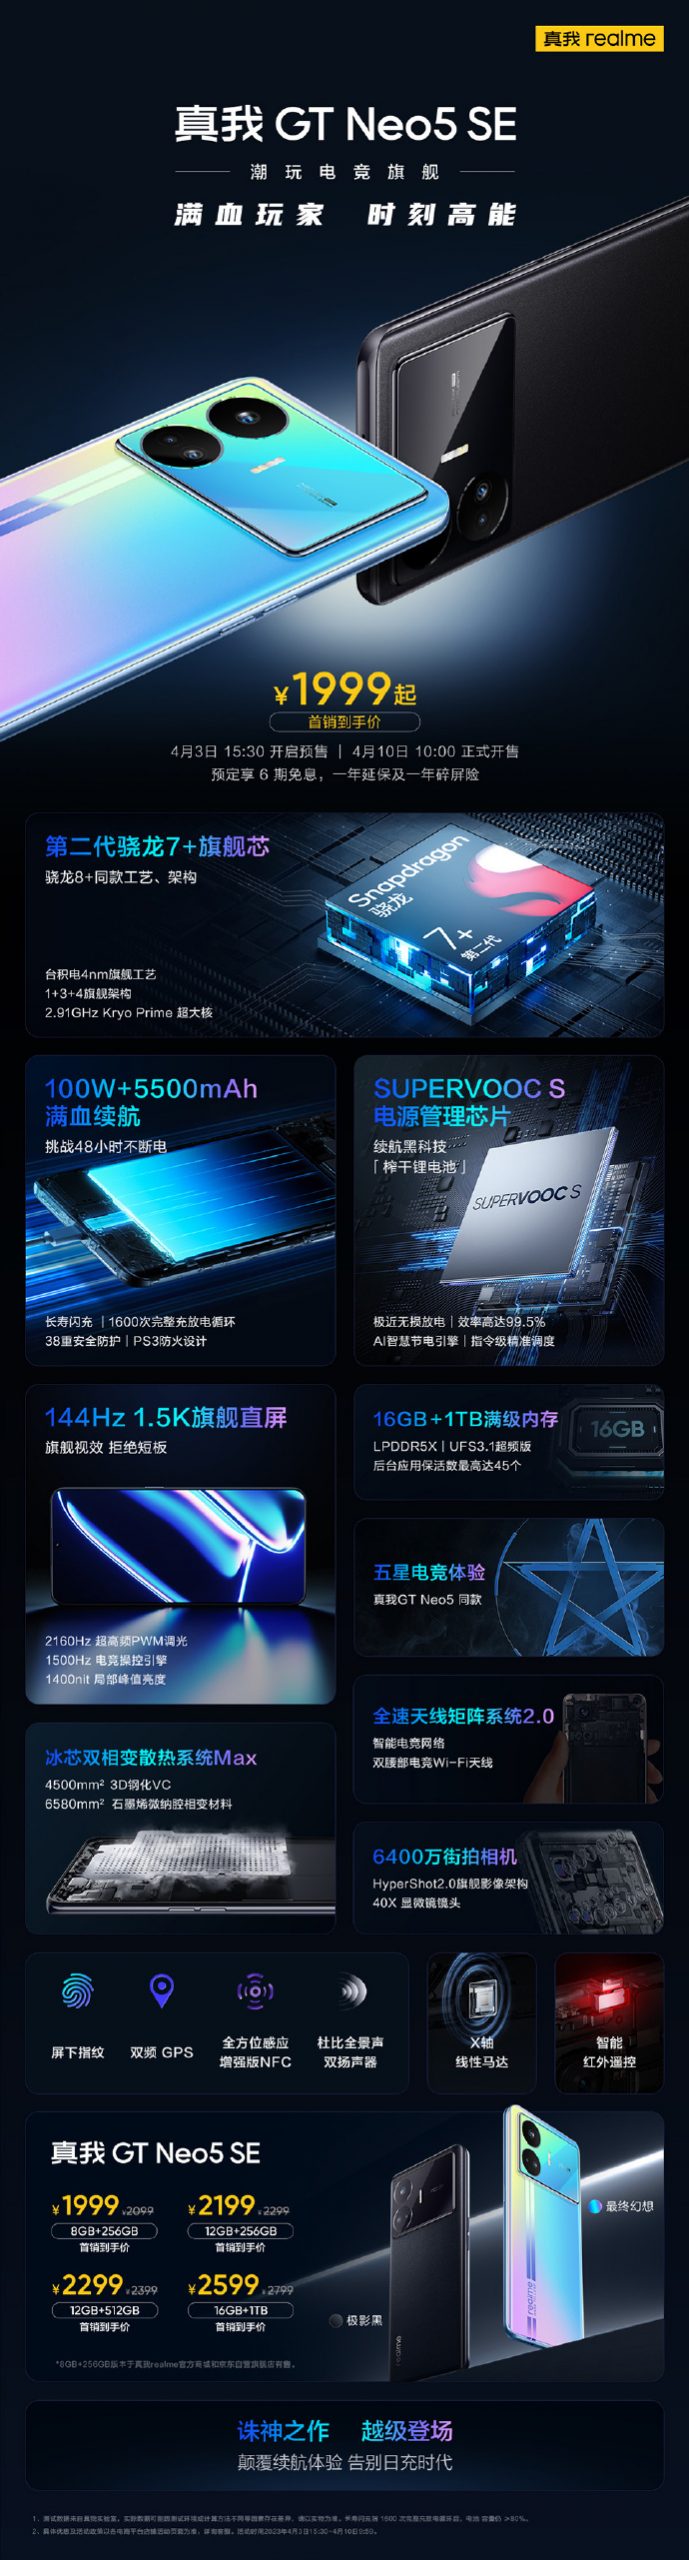 premiera Realme GT Neo 5 SE cena specyfikacja techniczna